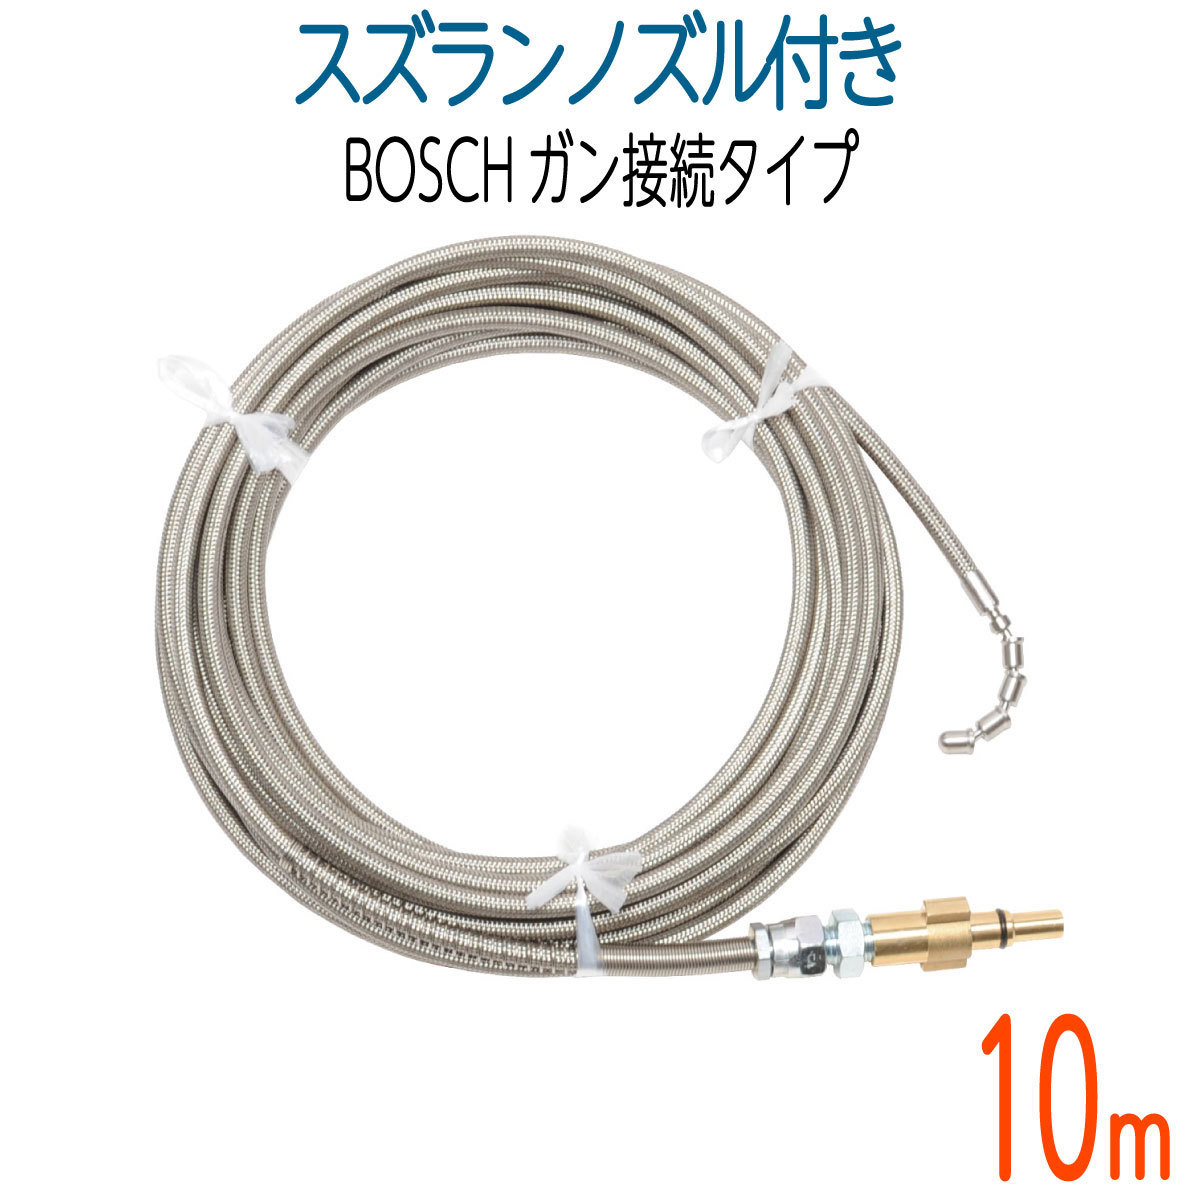 10M】BOSCH対応 プロ仕様洗管ホース ガン接続 スズランノズル付 - wien51.at